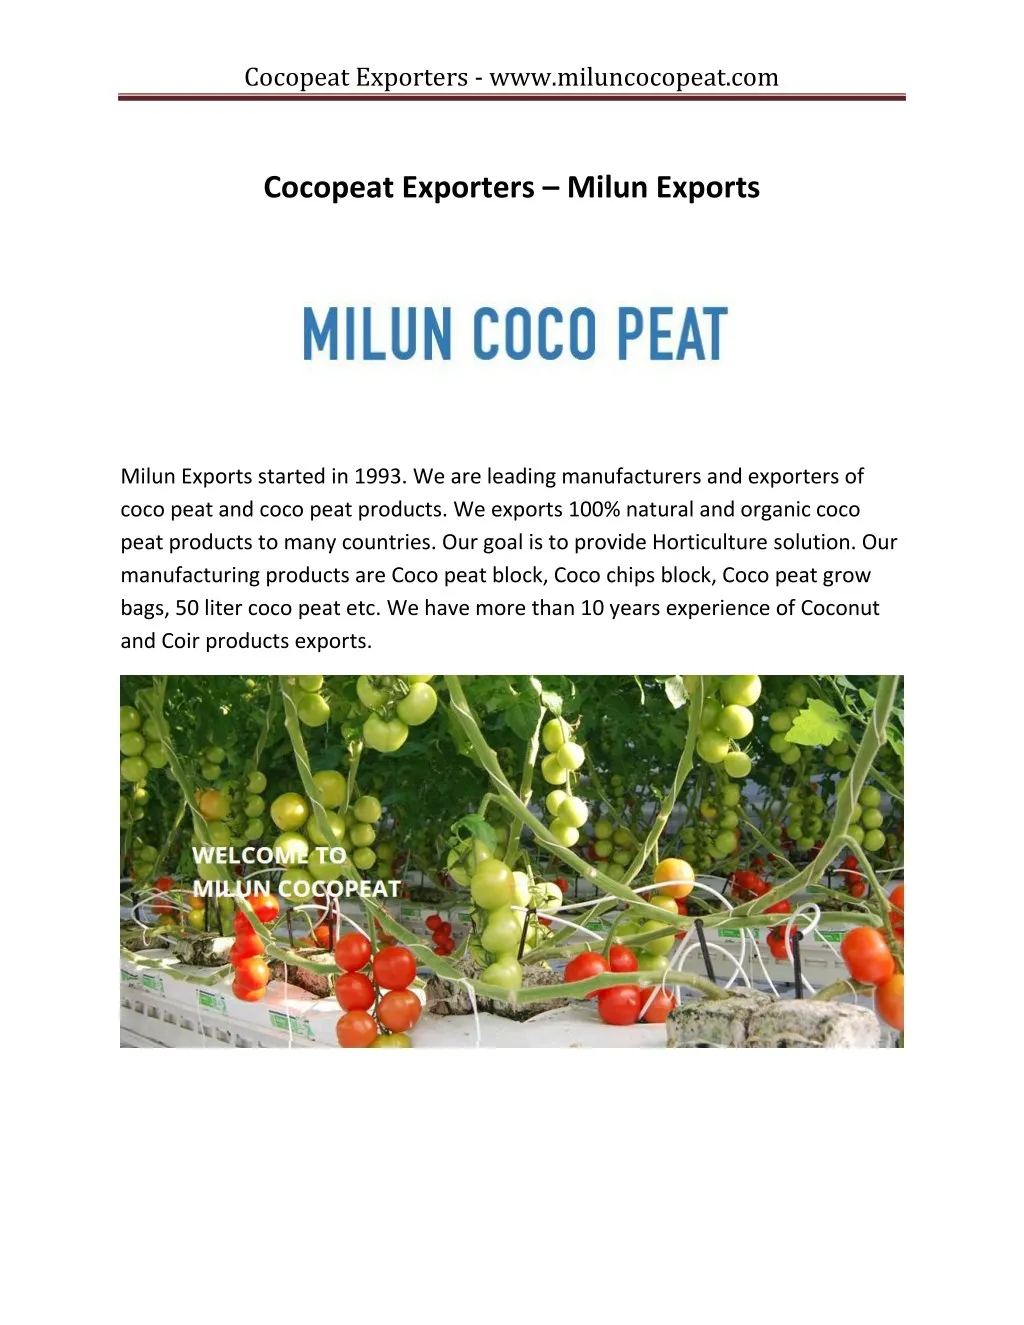 cocopeat exporters www miluncocopeat com